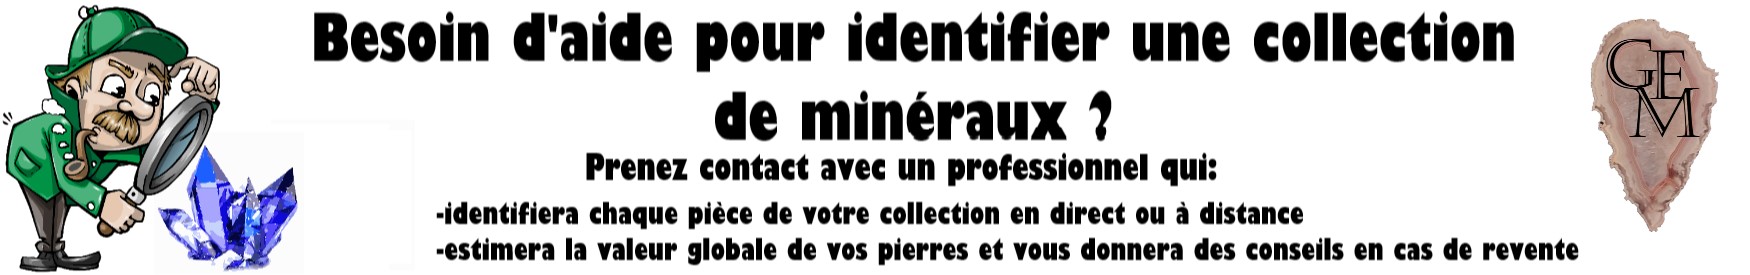 mineral-identification-pierre-precieuse-pierre-naturelle-cristaux-identifier-comment-reconnaitre-guide